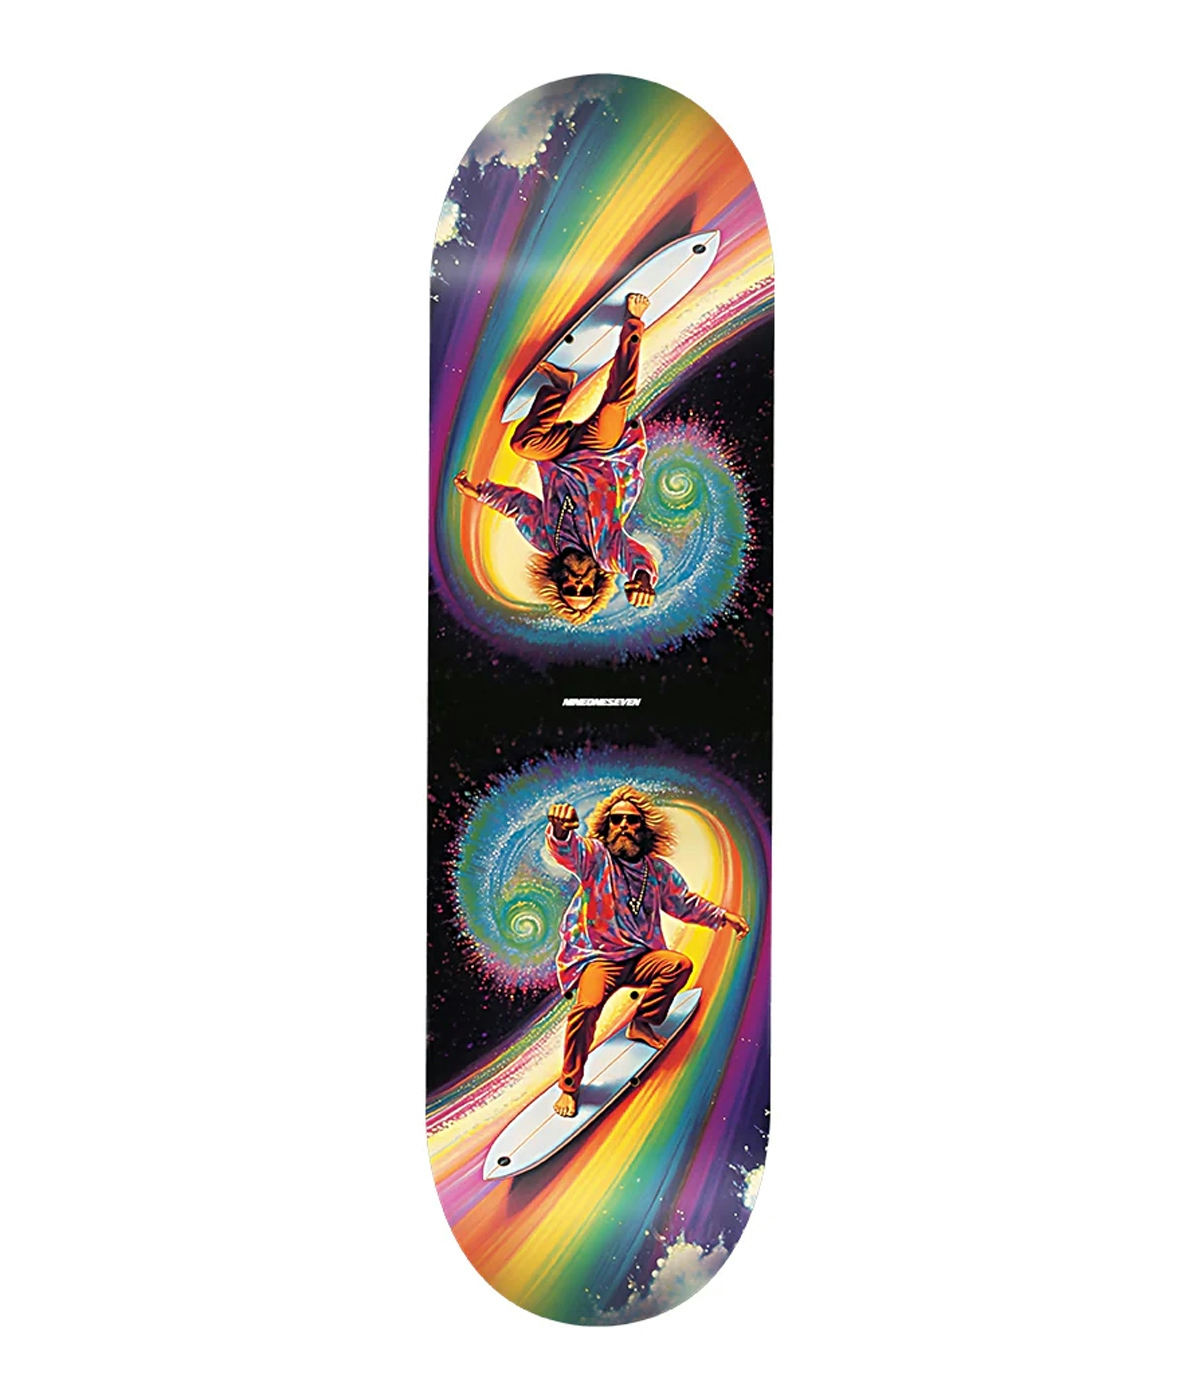 Call Me 917 Topanga Dude Skateboard 8.5" Multicolor 1